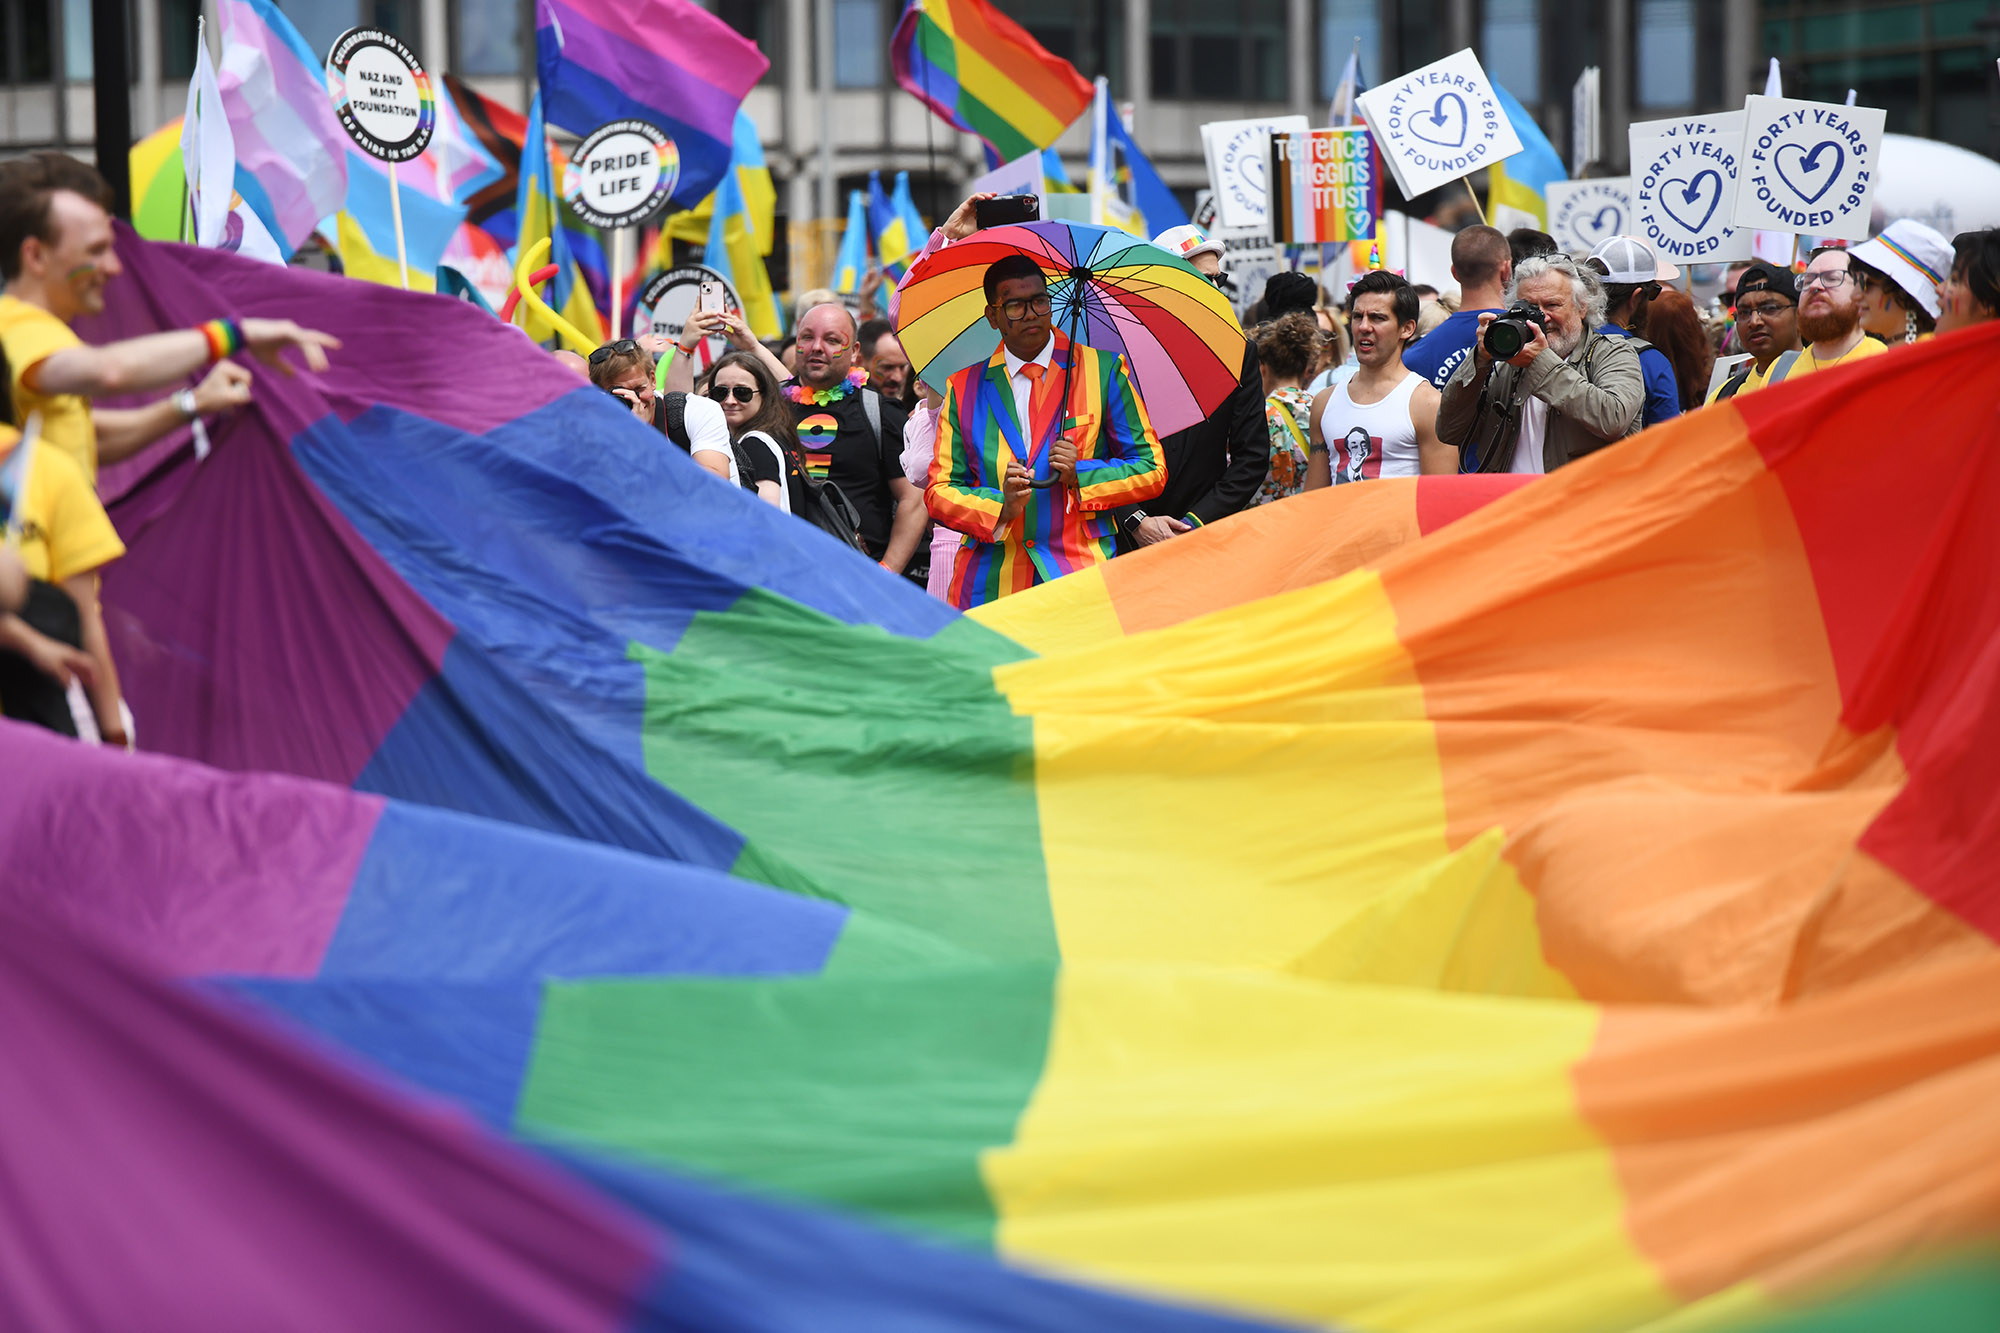 London's Pride Parade Returns After Pandemic Hiatus - Bloomberg